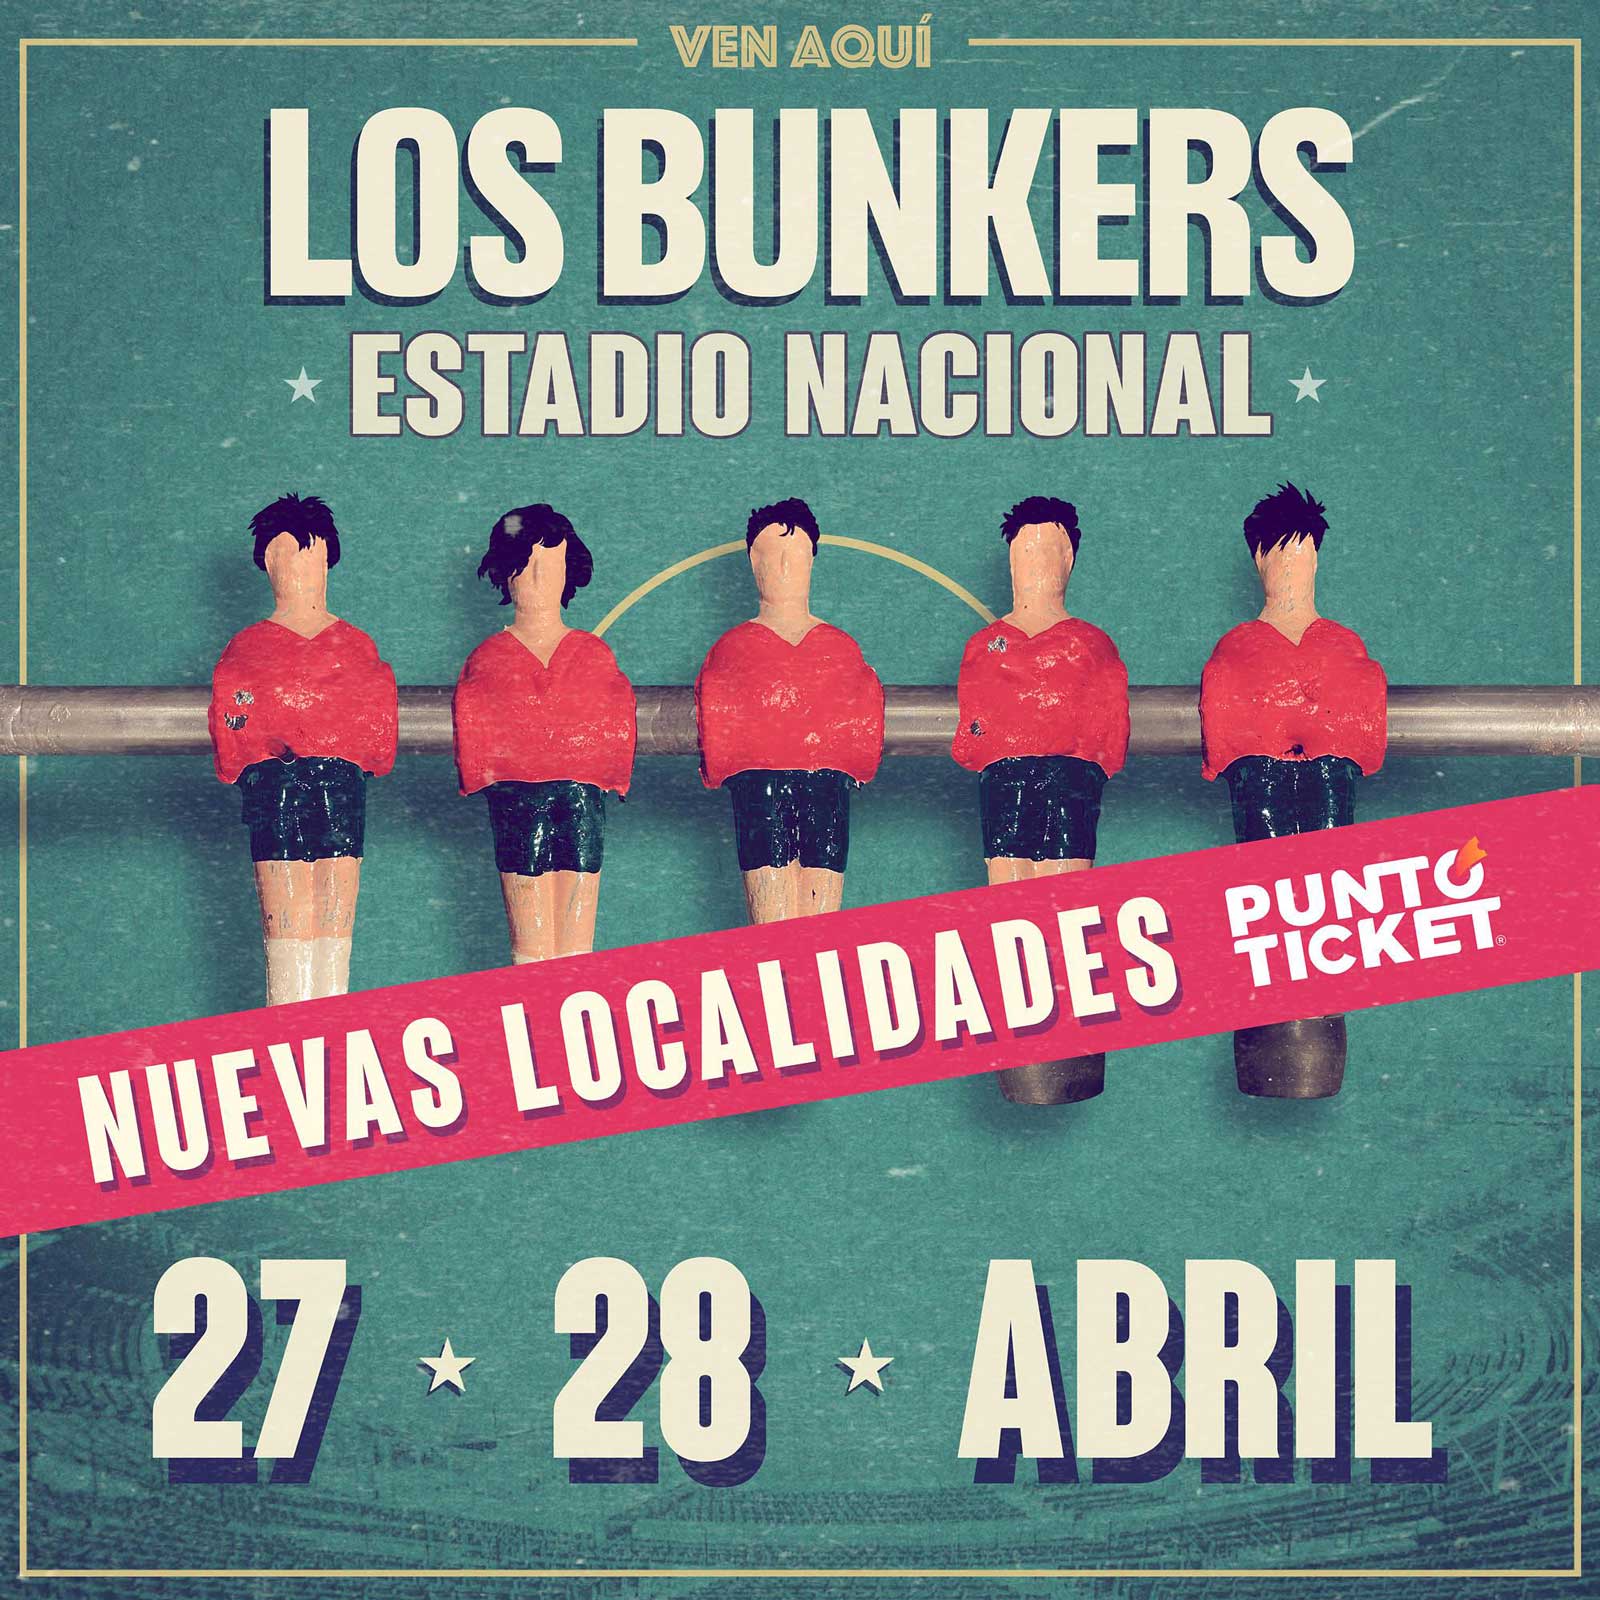 Los Bunkers @ Estadio Nacional | Nuevas Localidades